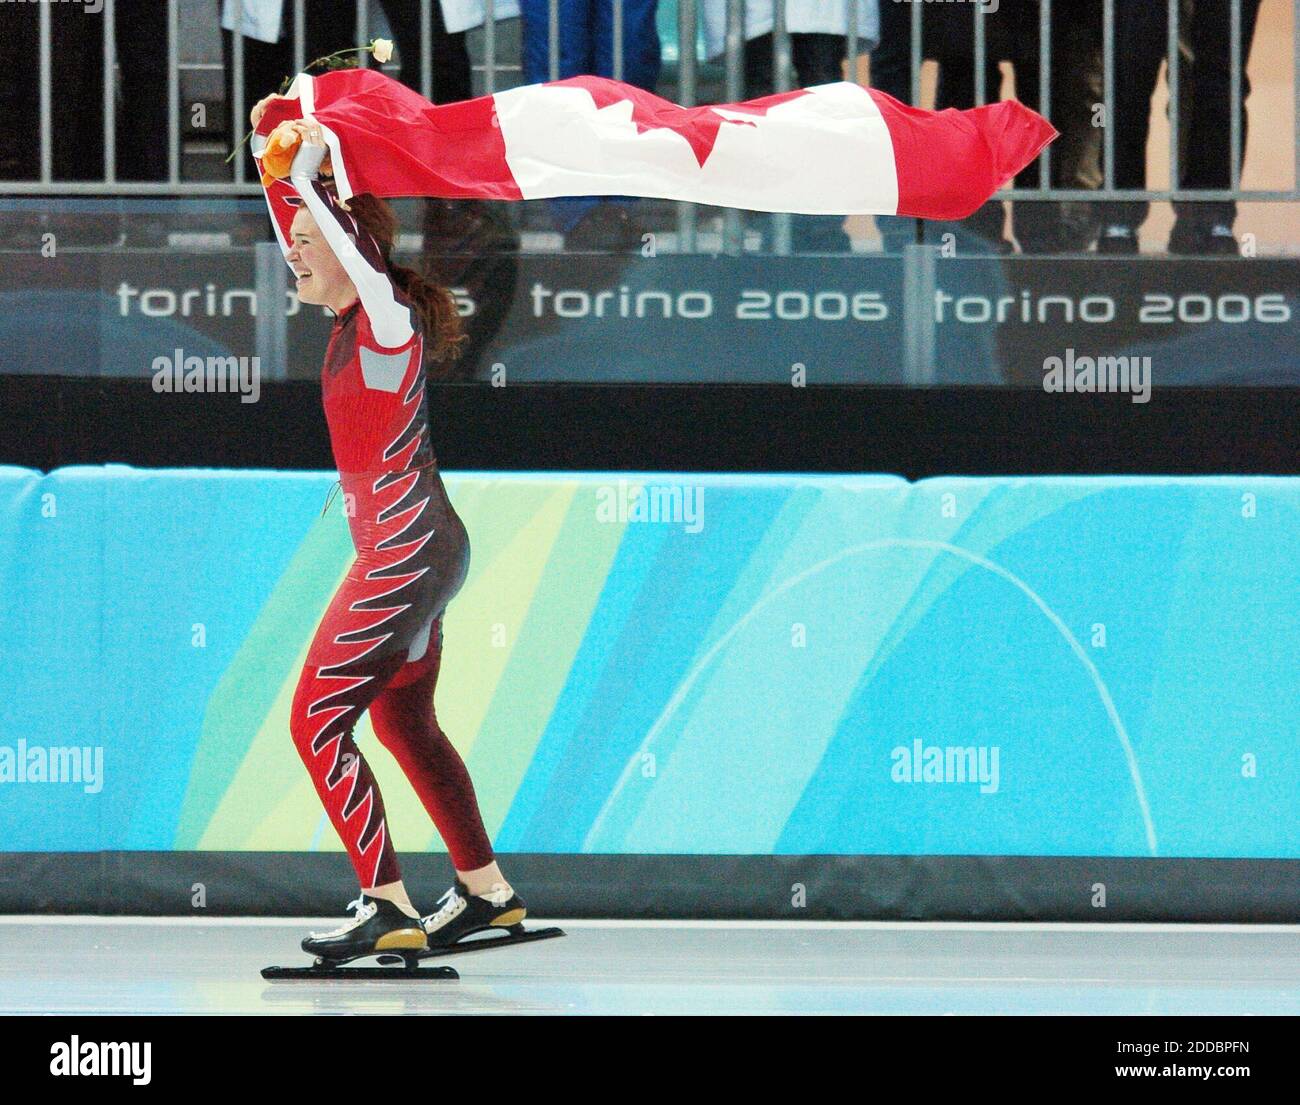 PAS DE FILM, PAS DE VIDÉO, PAS de télévision, PAS DE DOCUMENTAIRE - Clara Hughes, du Canada, célèbre sa médaille d'or à la compétition de patinage de vitesse de 5000 mètres des dames, le 25 février 2006, à l'Oval Lingotto à Turin, en Italie, lors des Jeux olympiques d'hiver de 2006. Photo de Steve Deslich/KRT/Cameleon/ABACAPRESS.COM Banque D'Images